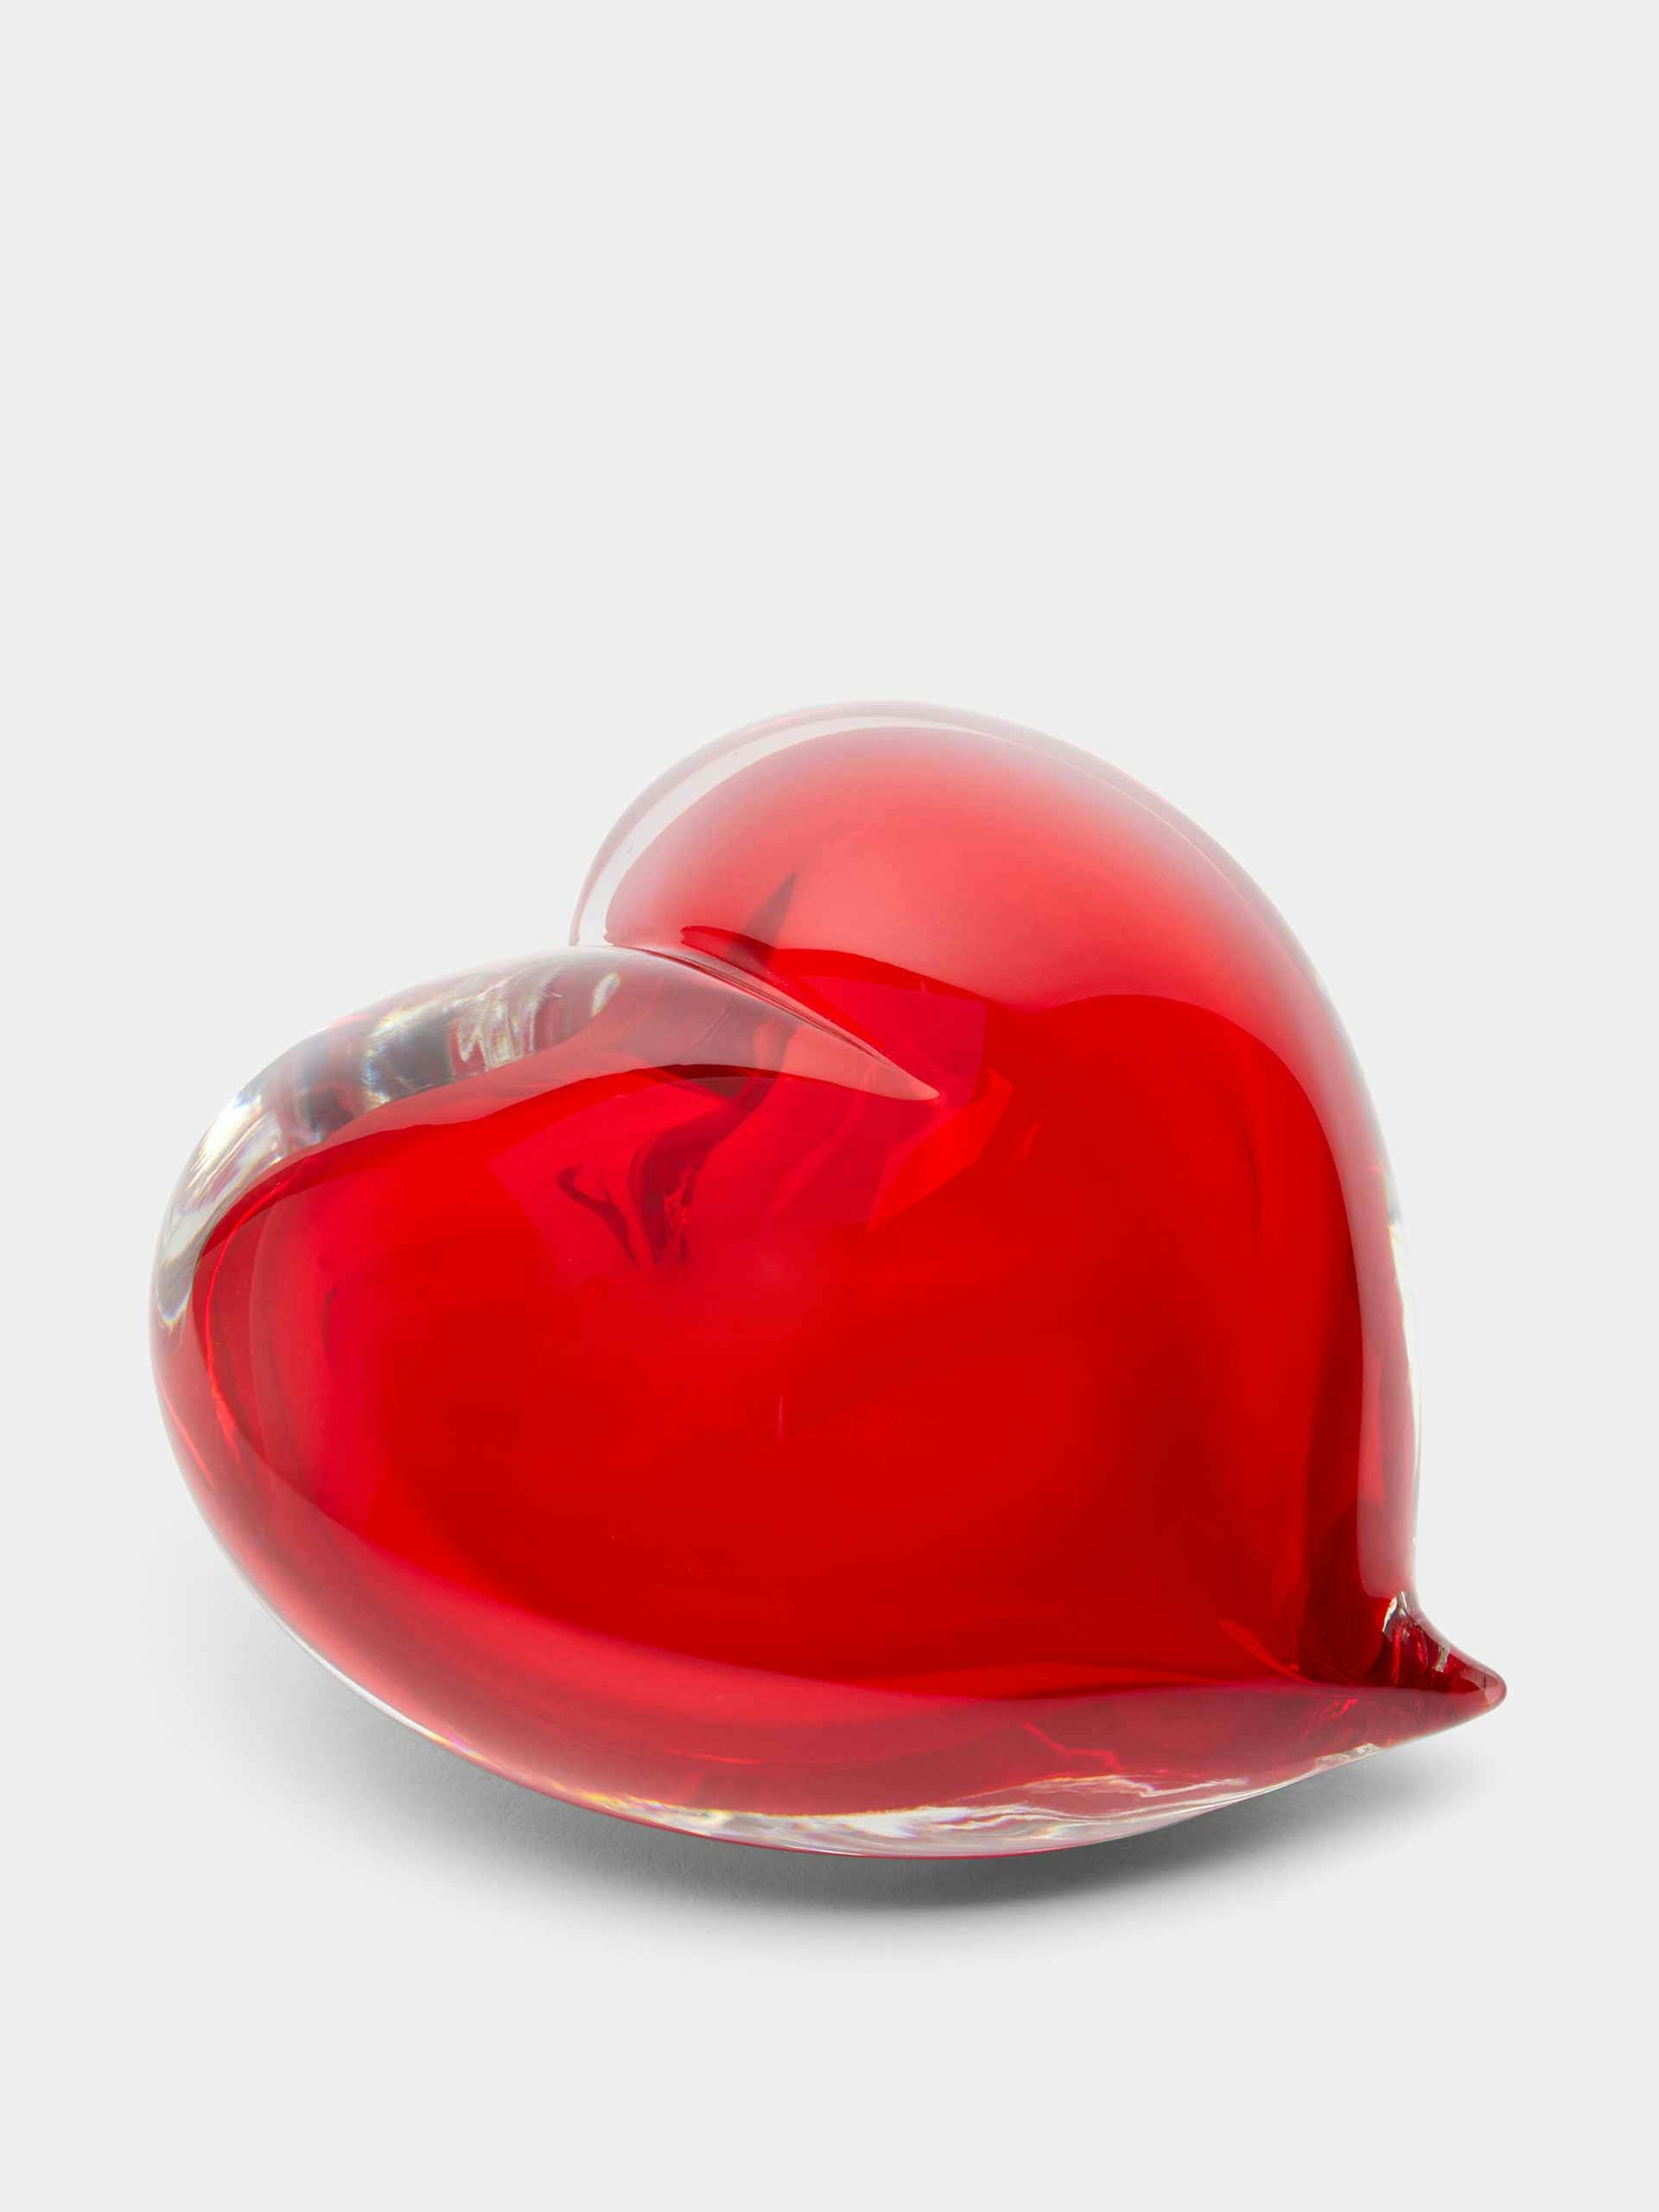 Glass heart paperweight